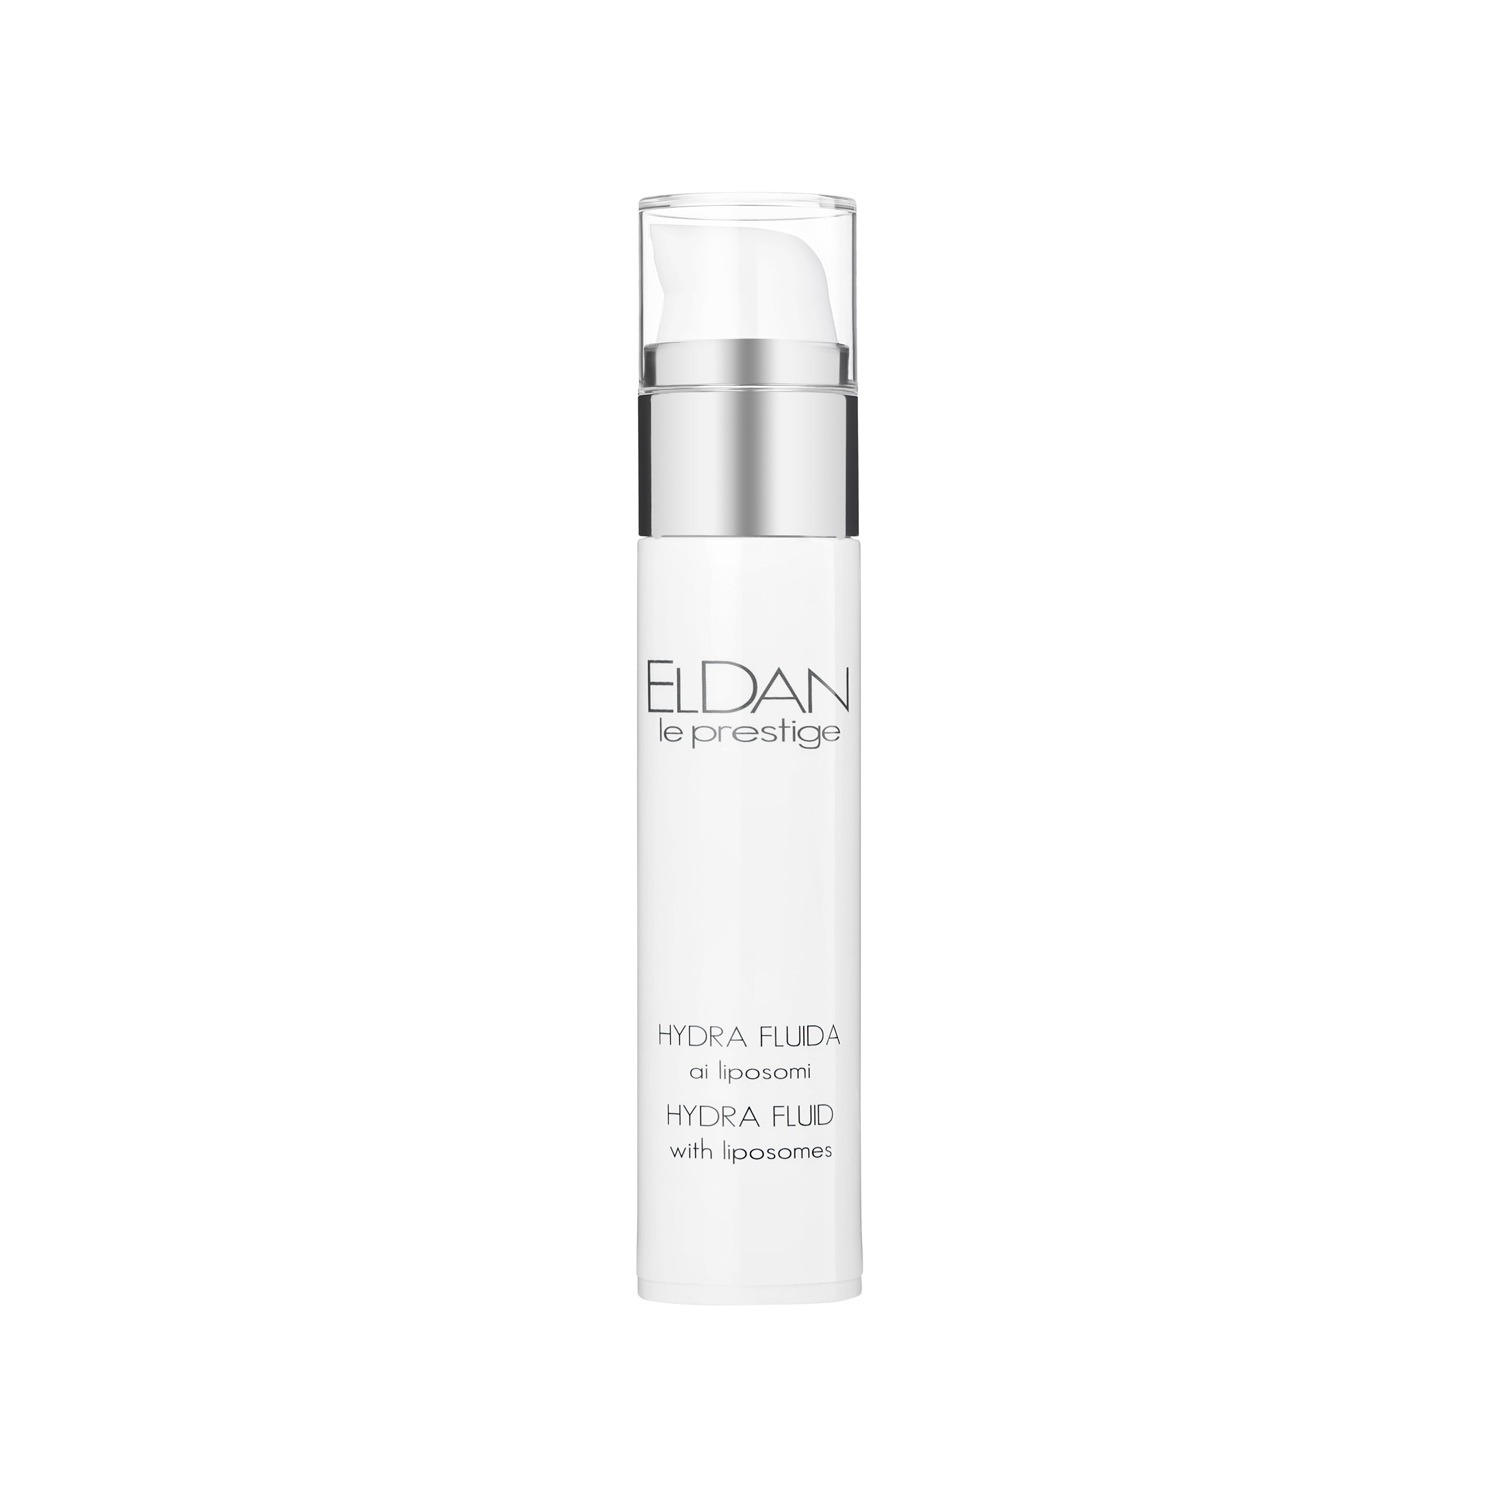 Сыворотка для лица Eldan Cosmetics Hydra Fluid With Liposomes увлажняющая, 50 мл eldan cosmetics ана лосьон молочный 50 0